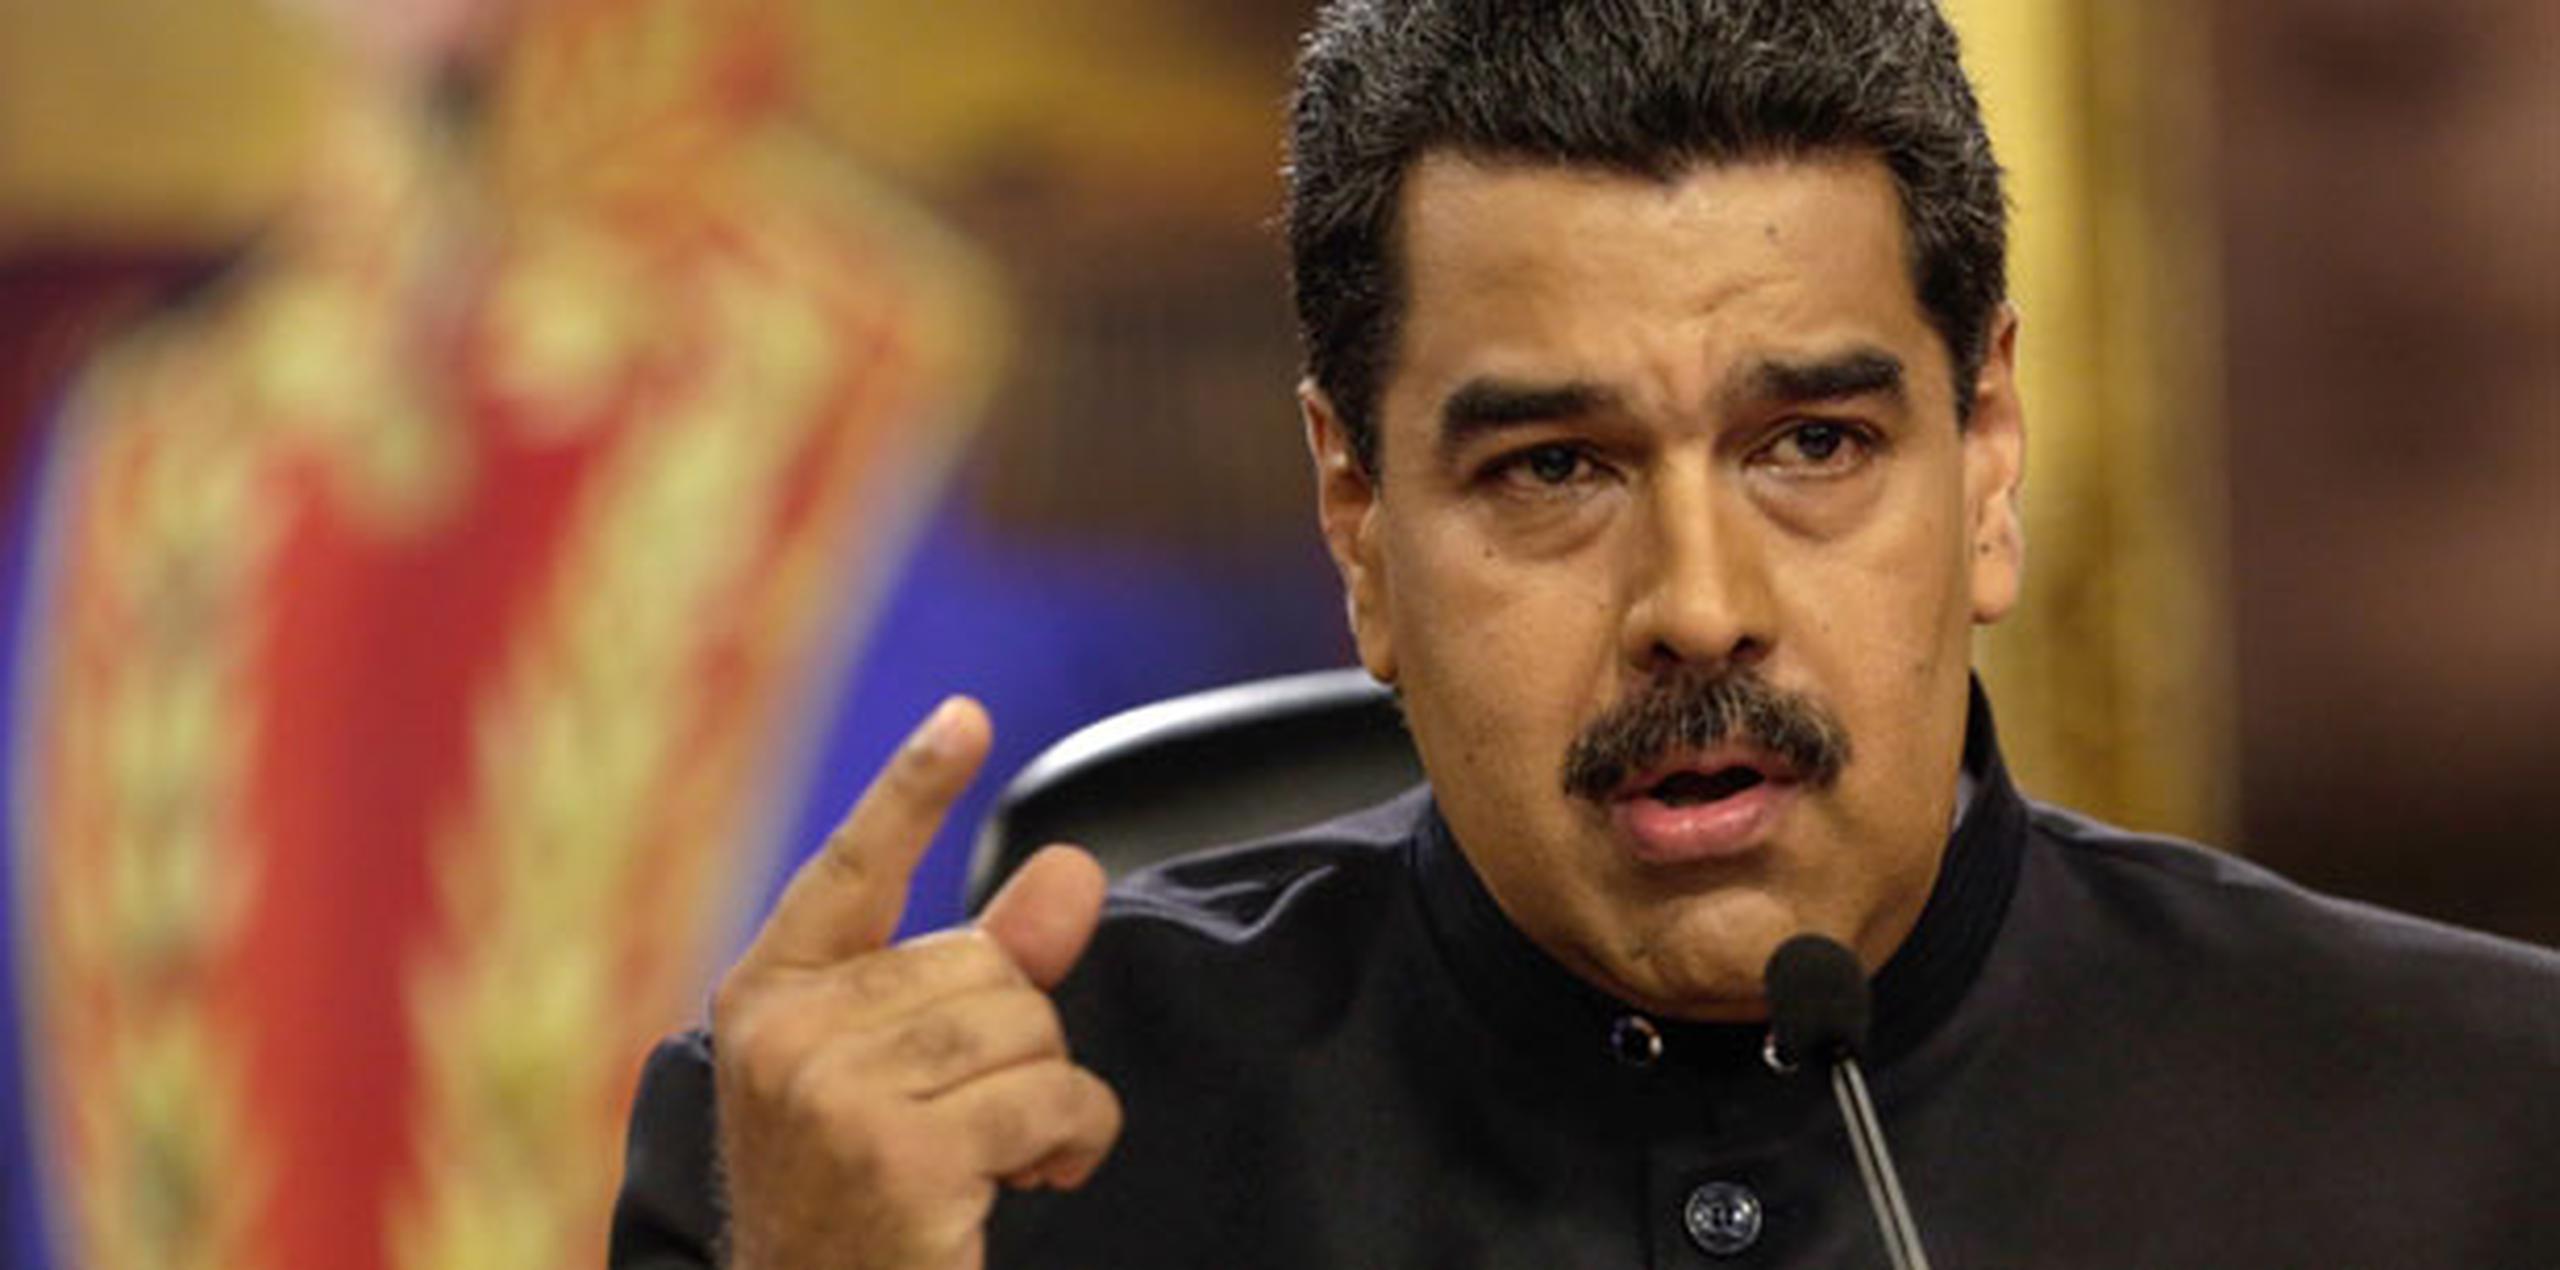 Las medidas apuntan a cuatro altos funcionarios venezolanos que Washington dice son responsables de promover la votación y minar la democracia en Venezuela. (EFE)